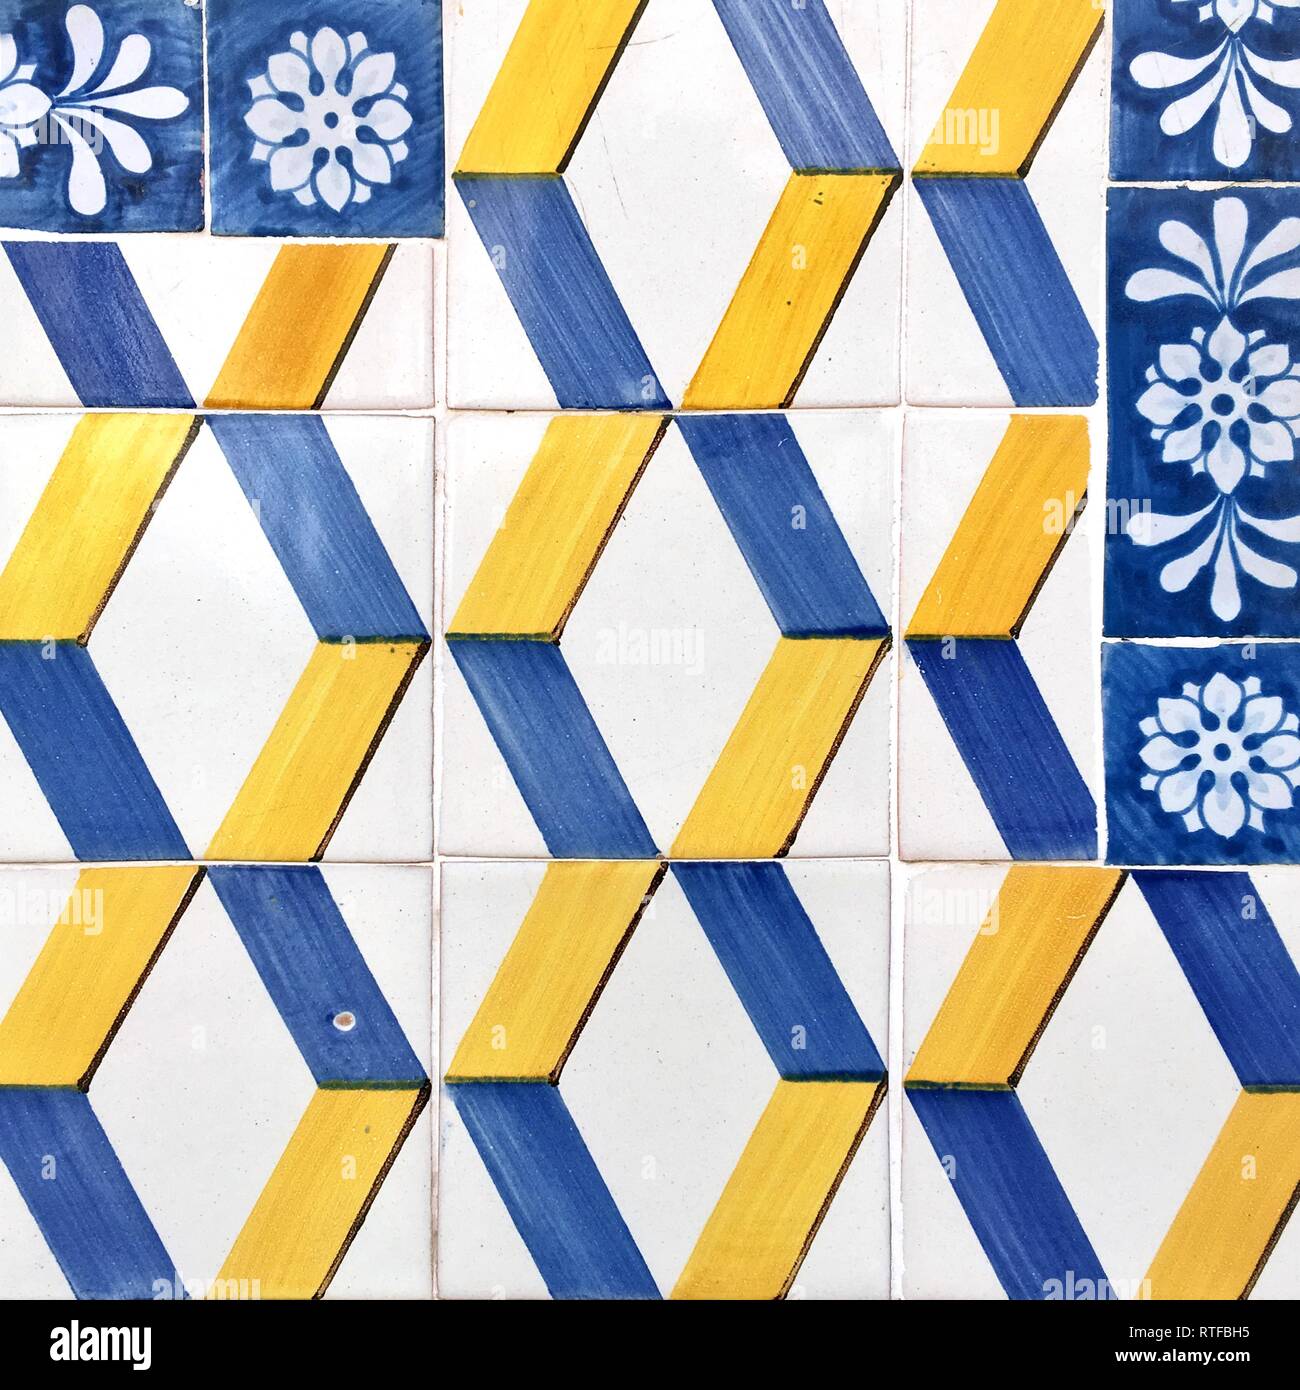 Patrón de mosaico, detalle de la fachada de la casa de azulejos, Lisboa, Portugal Foto de stock